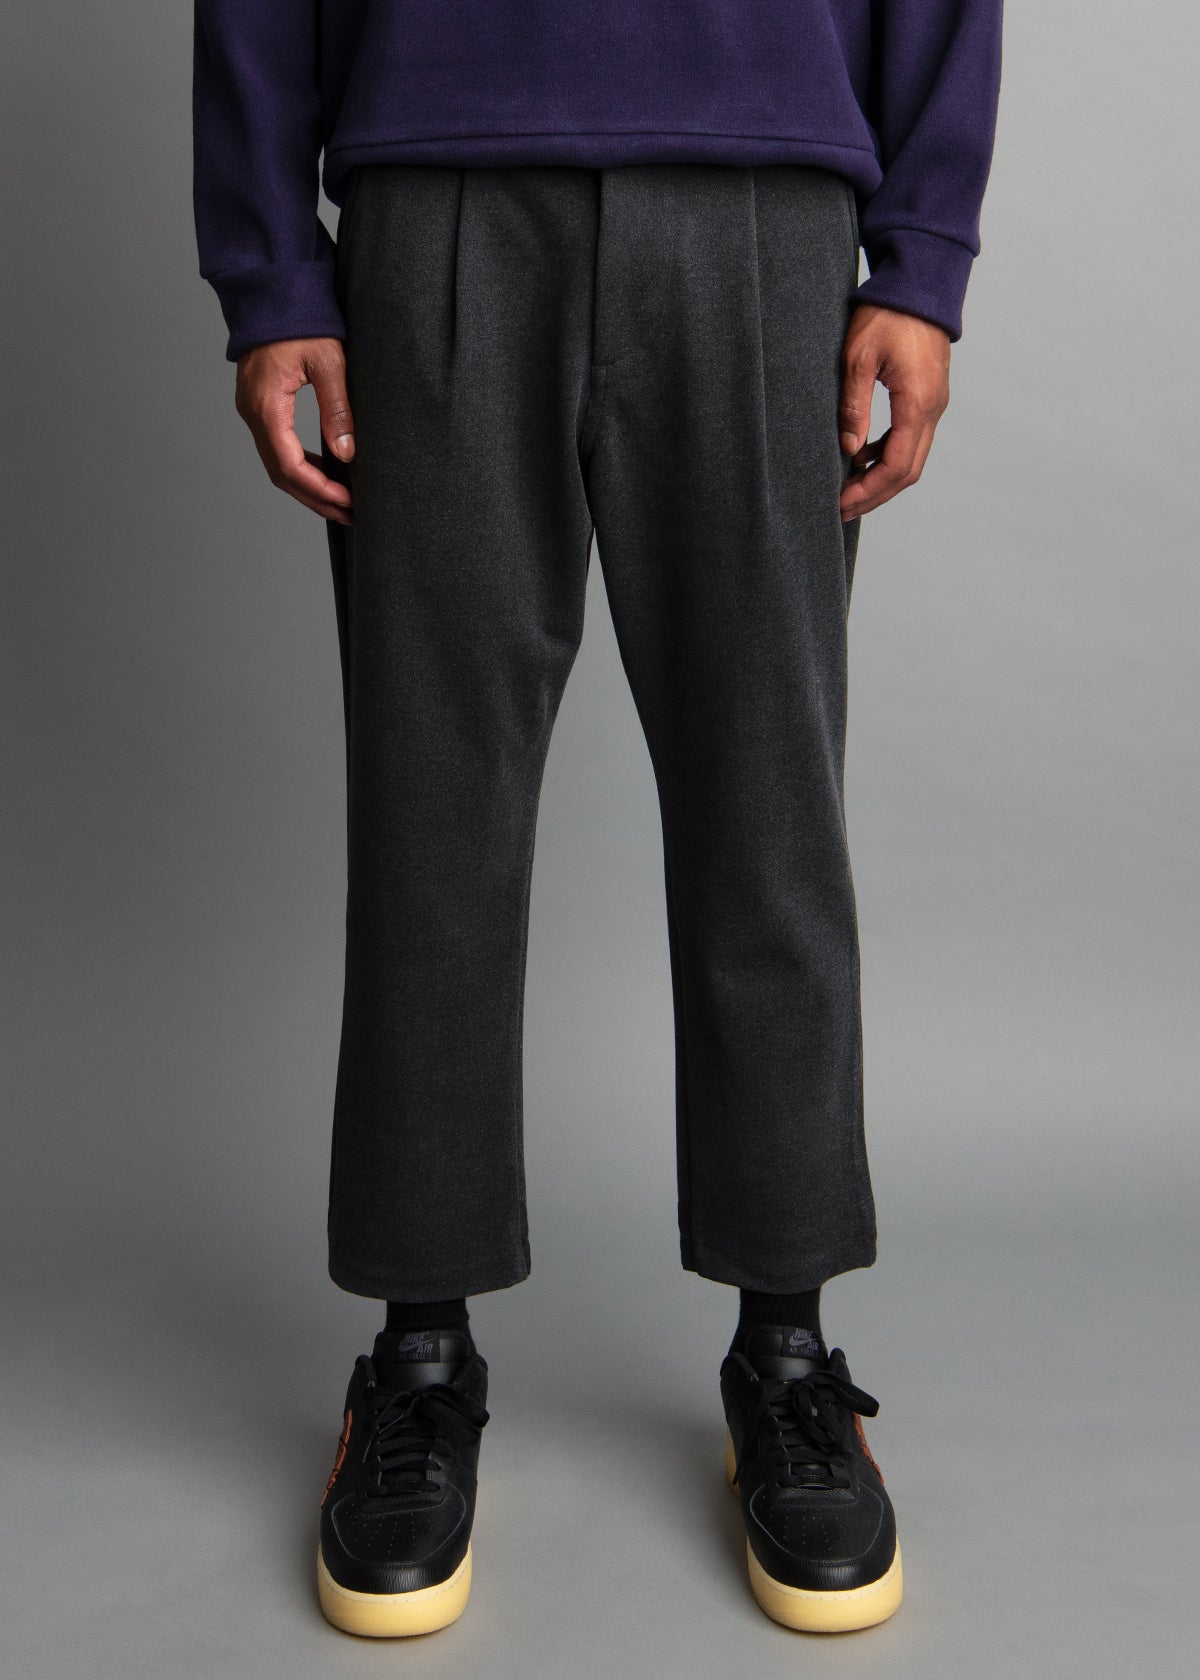 dark gray knit pants for men